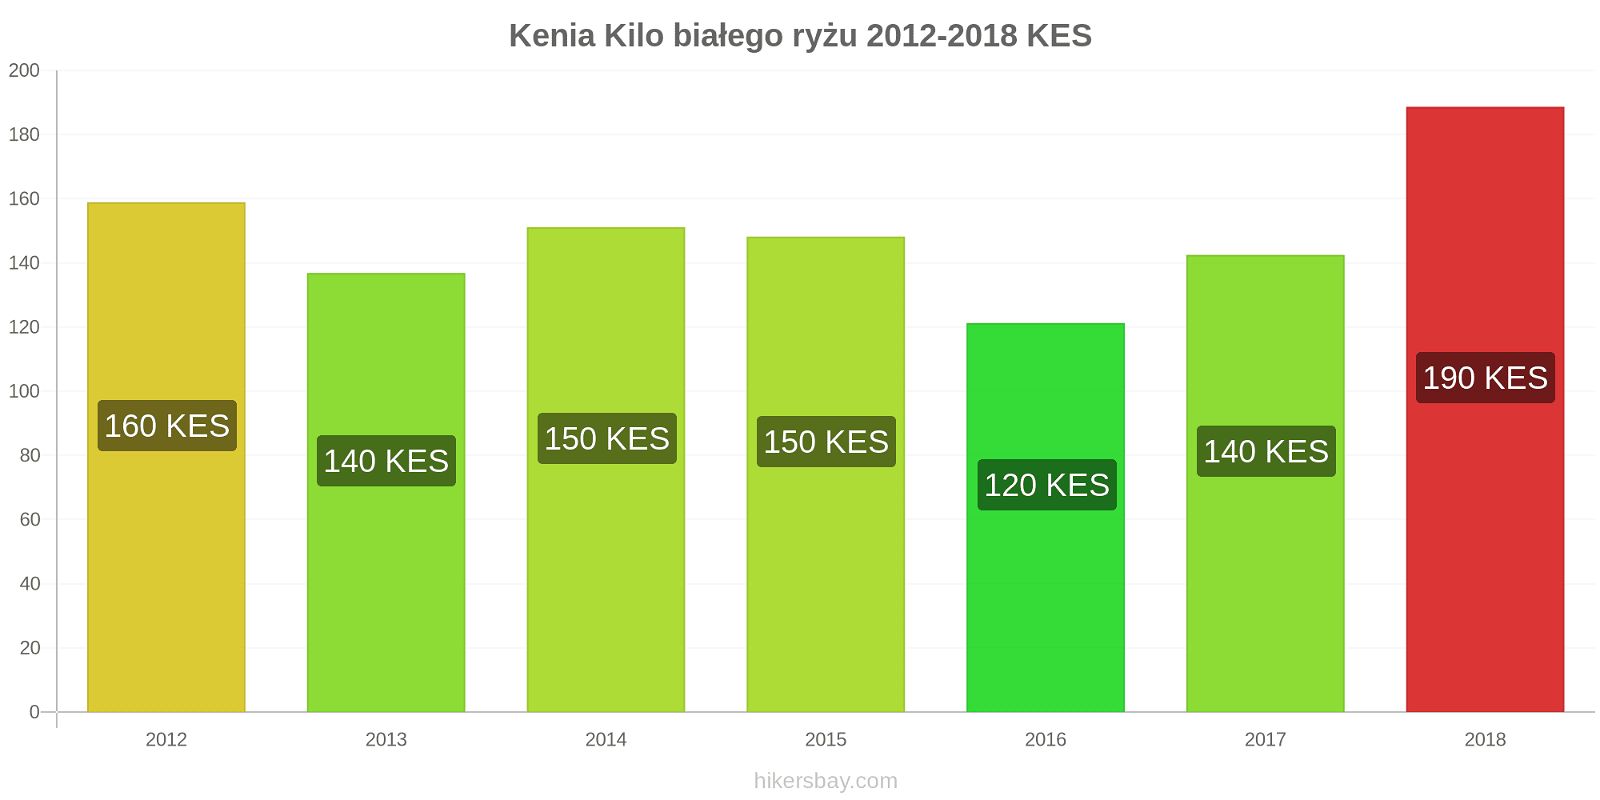 Kenia zmiany cen Kilo białego ryżu hikersbay.com